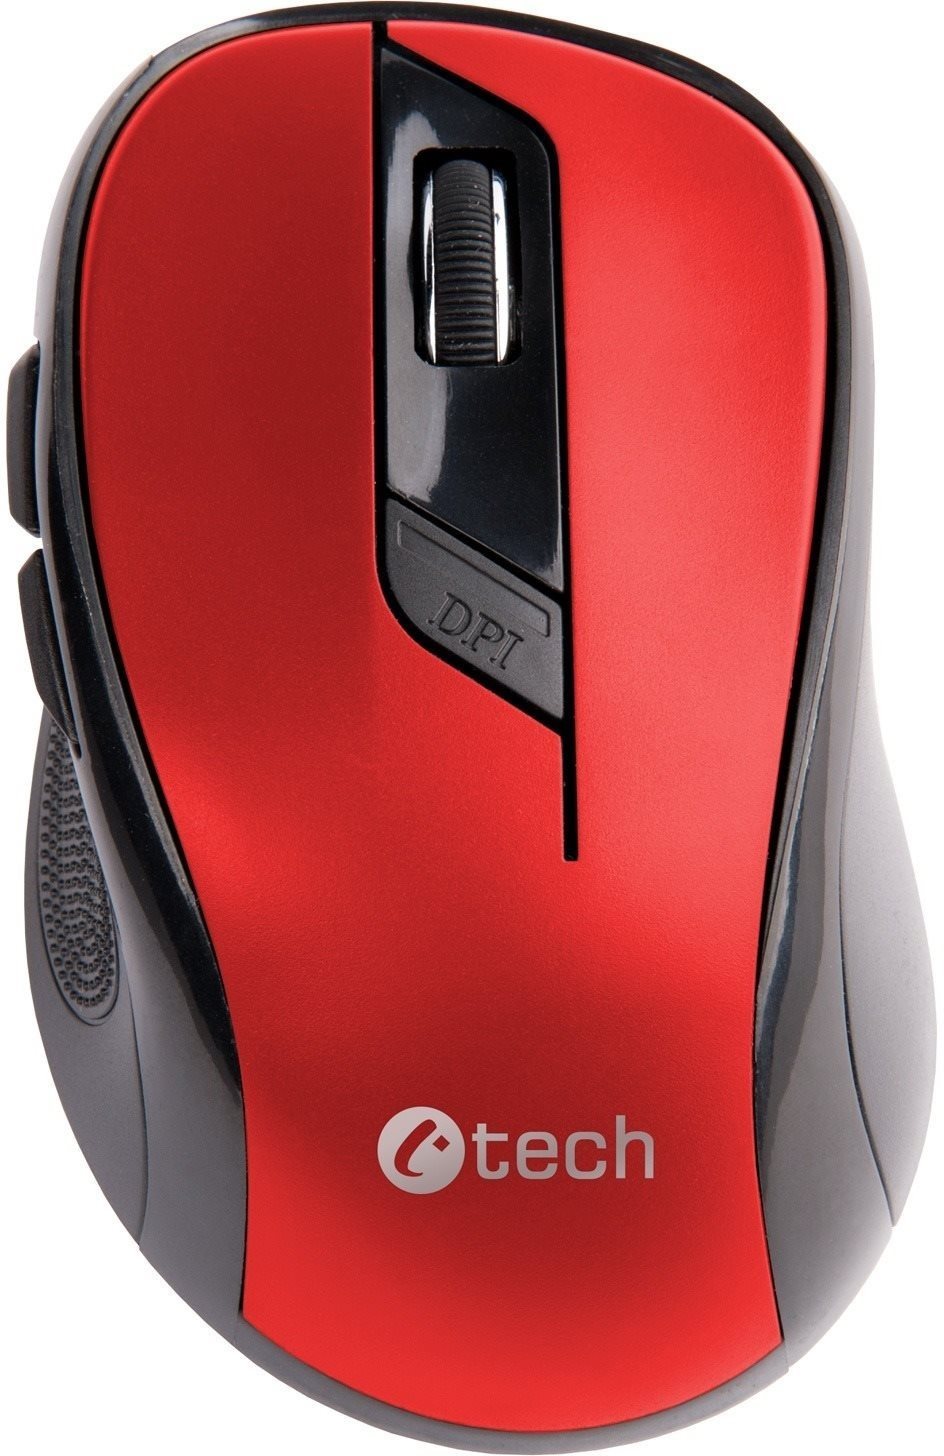 C-TECH egér WLM-02, fekete-piros, vezeték nélküli, 1600DPI, 6 gomb, USB nano vevő